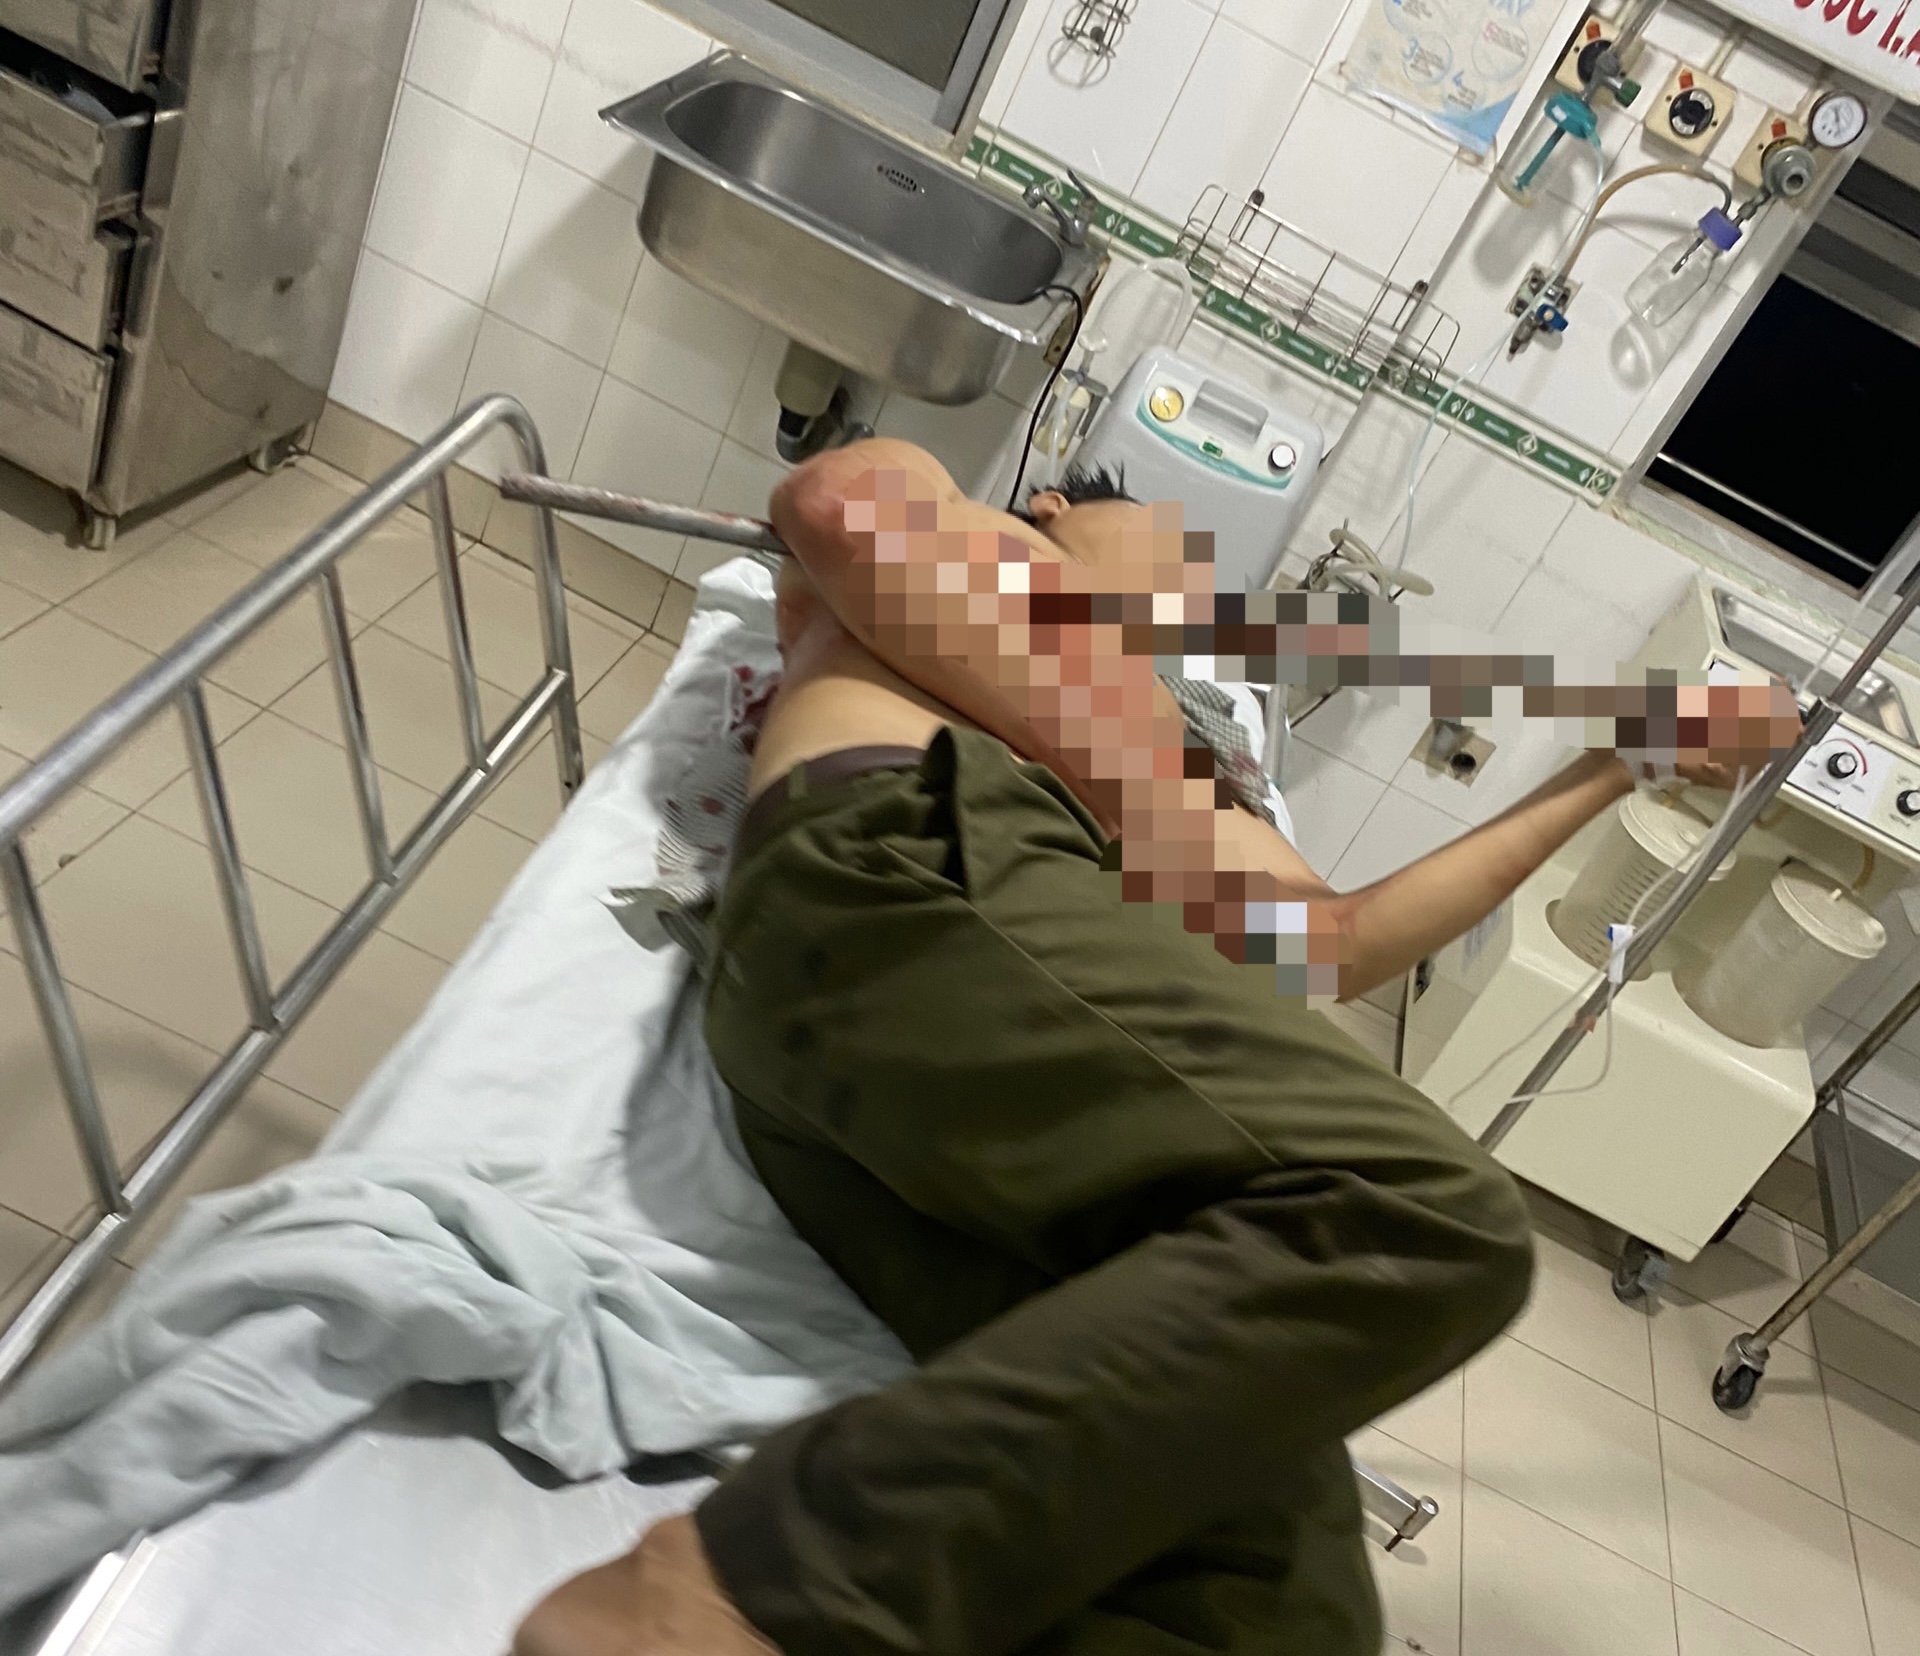 Tổ trưởng tổ dân phòng được đưa đến bệnh viện đa khoa tỉnh Bình Thuận cấp cứu khuya 21.9. Ảnh: DT